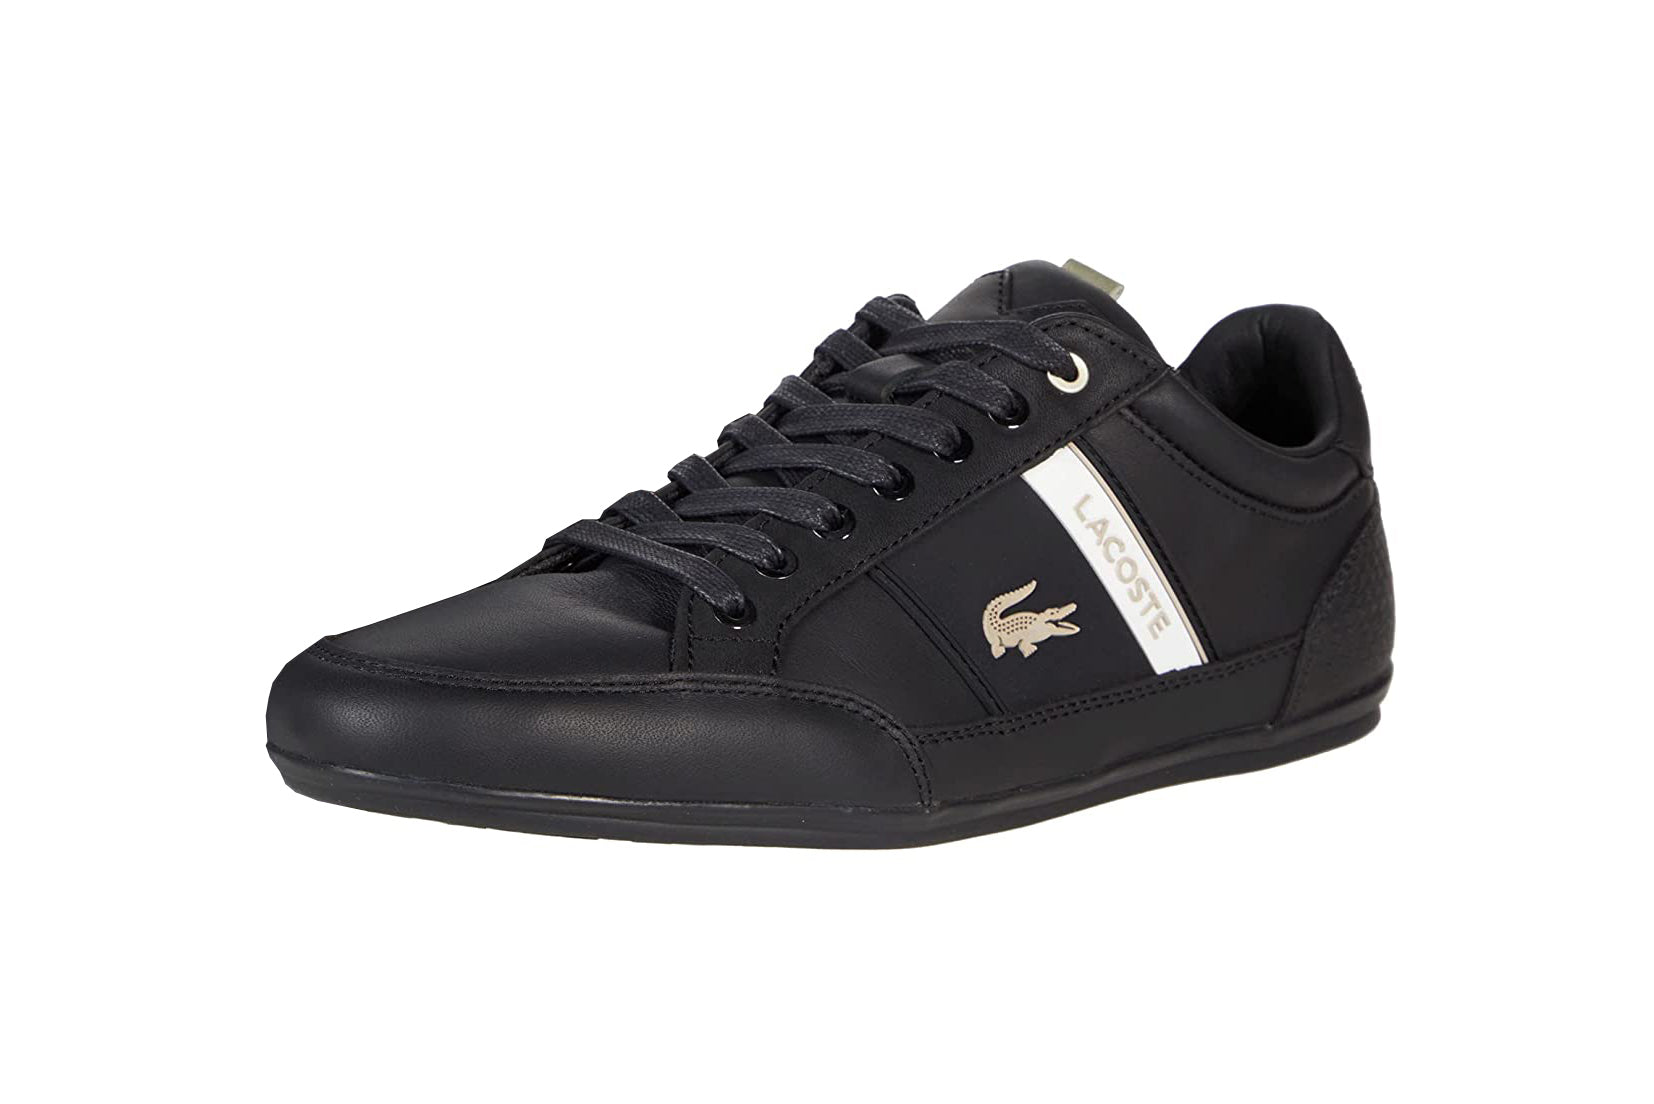 Lacoste Men's Chaymon Leather Black/White Shoes